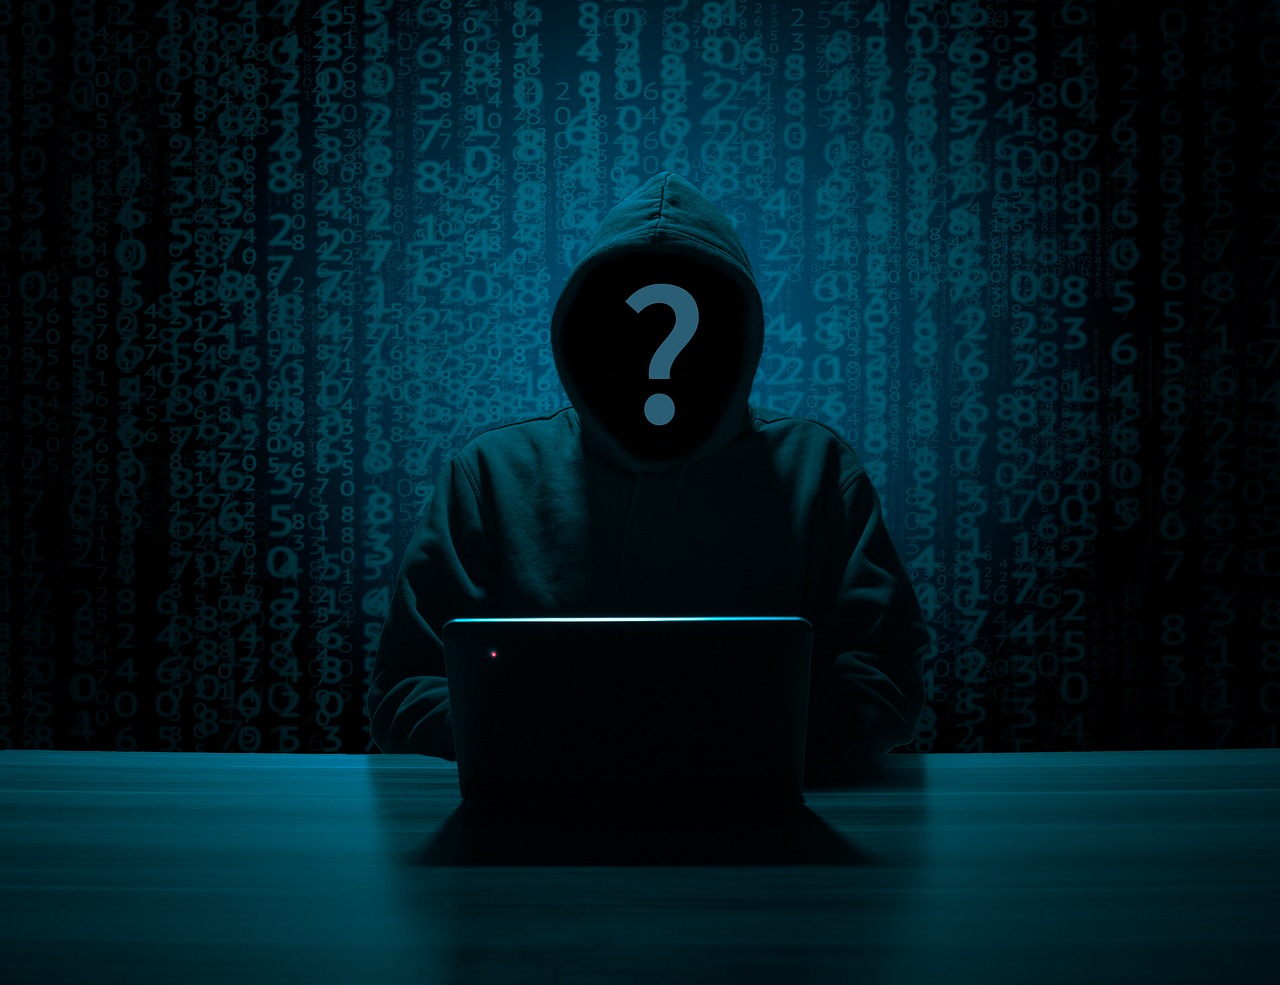 Hakeris,  Siluetas,  Hack,  Anoniminis,  Anonimiškumas,  Klaustukas,  Kompiuteriniai Nusikaltimai,  Elektroniniais Nusikaltimais,  Elektroniniais Nusikaltimais,  Baudžiamosios